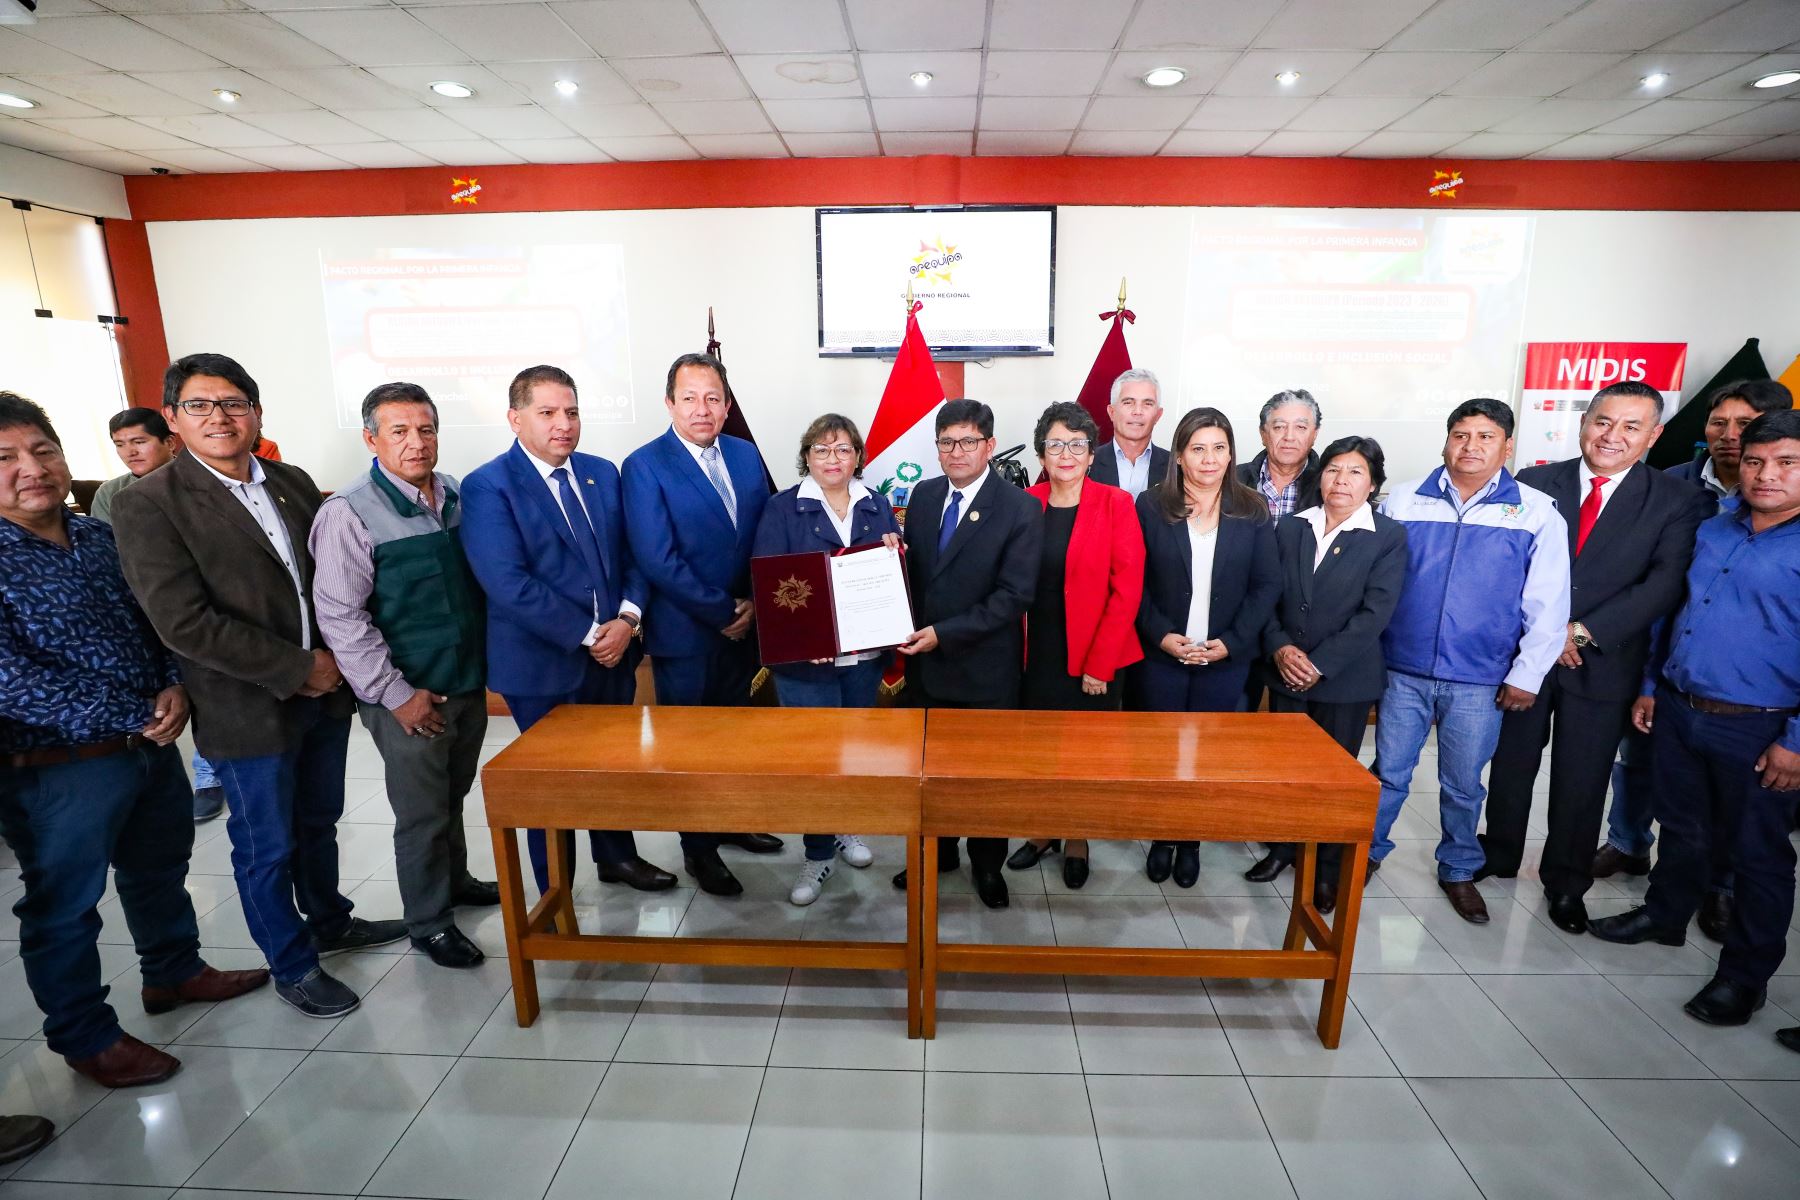 El Midis impulsó en Arequipa la firma del pacto por la infancia entre la región y los gobiernos locales. Foto: MIDIS/Difusión.